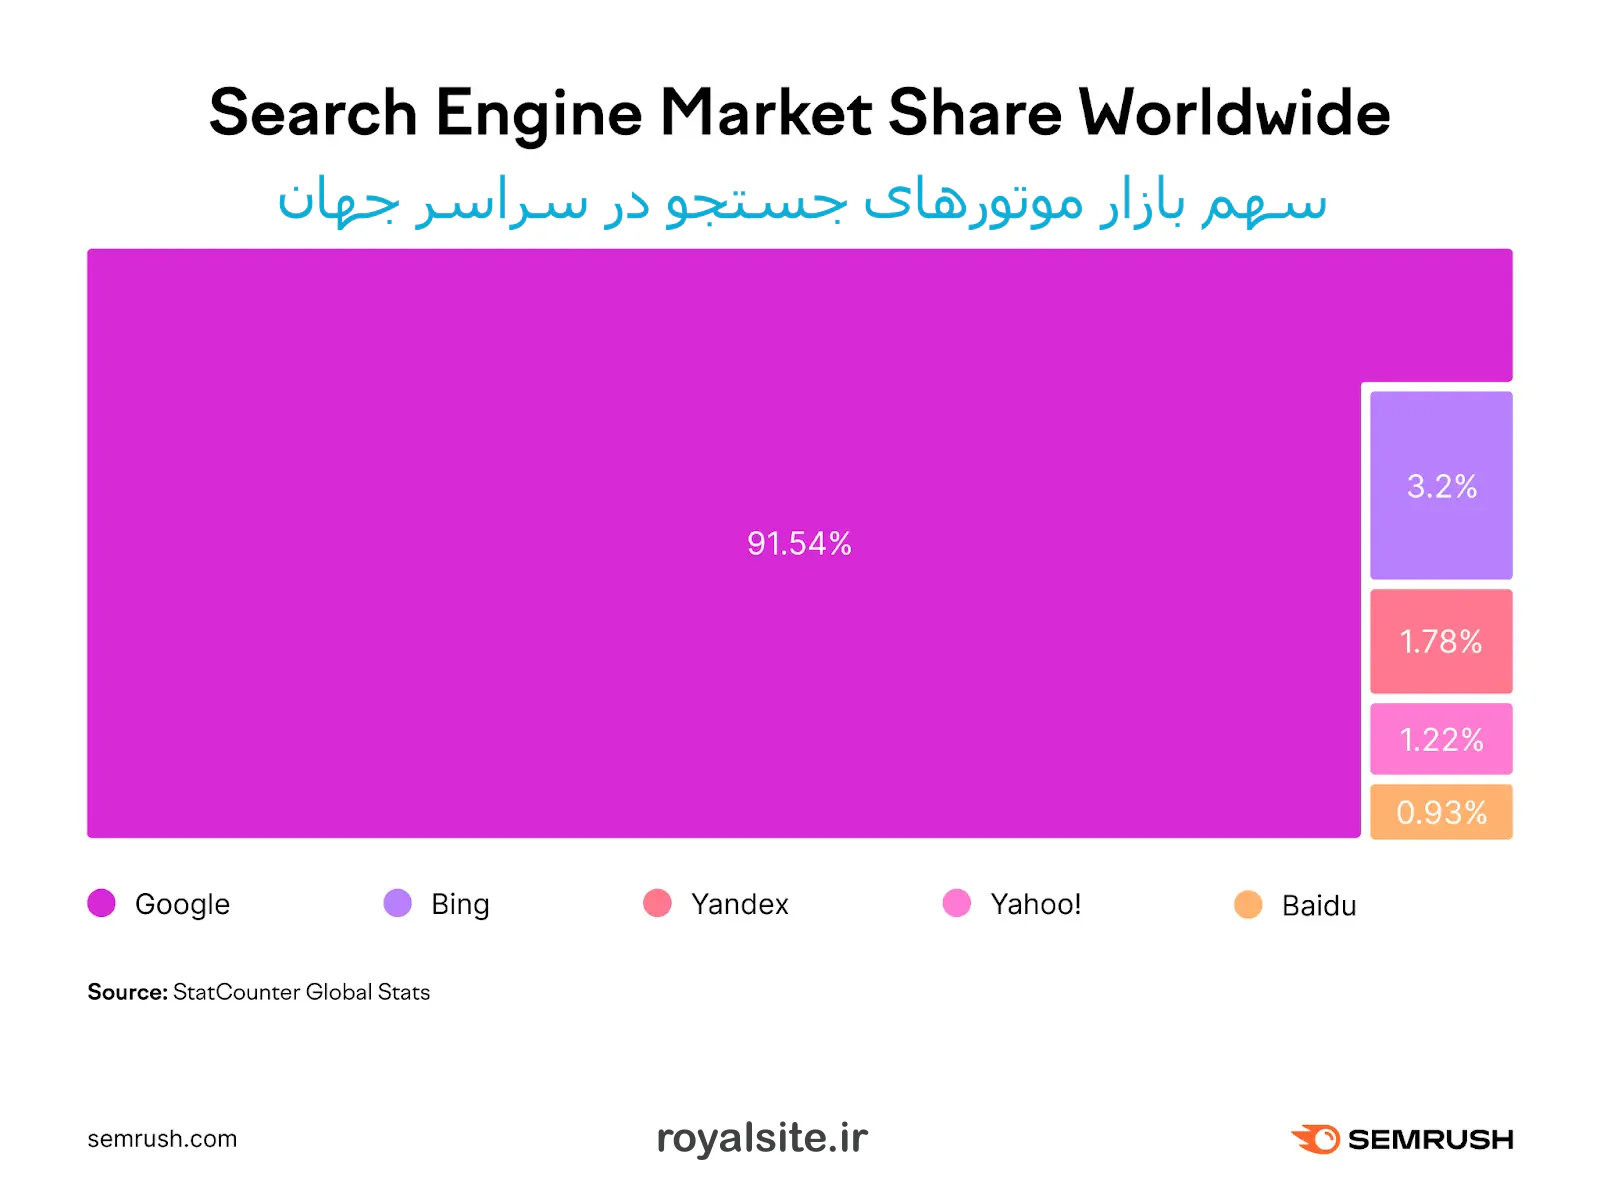 سهم بازار موتورهای جستجو در سراسر جهان